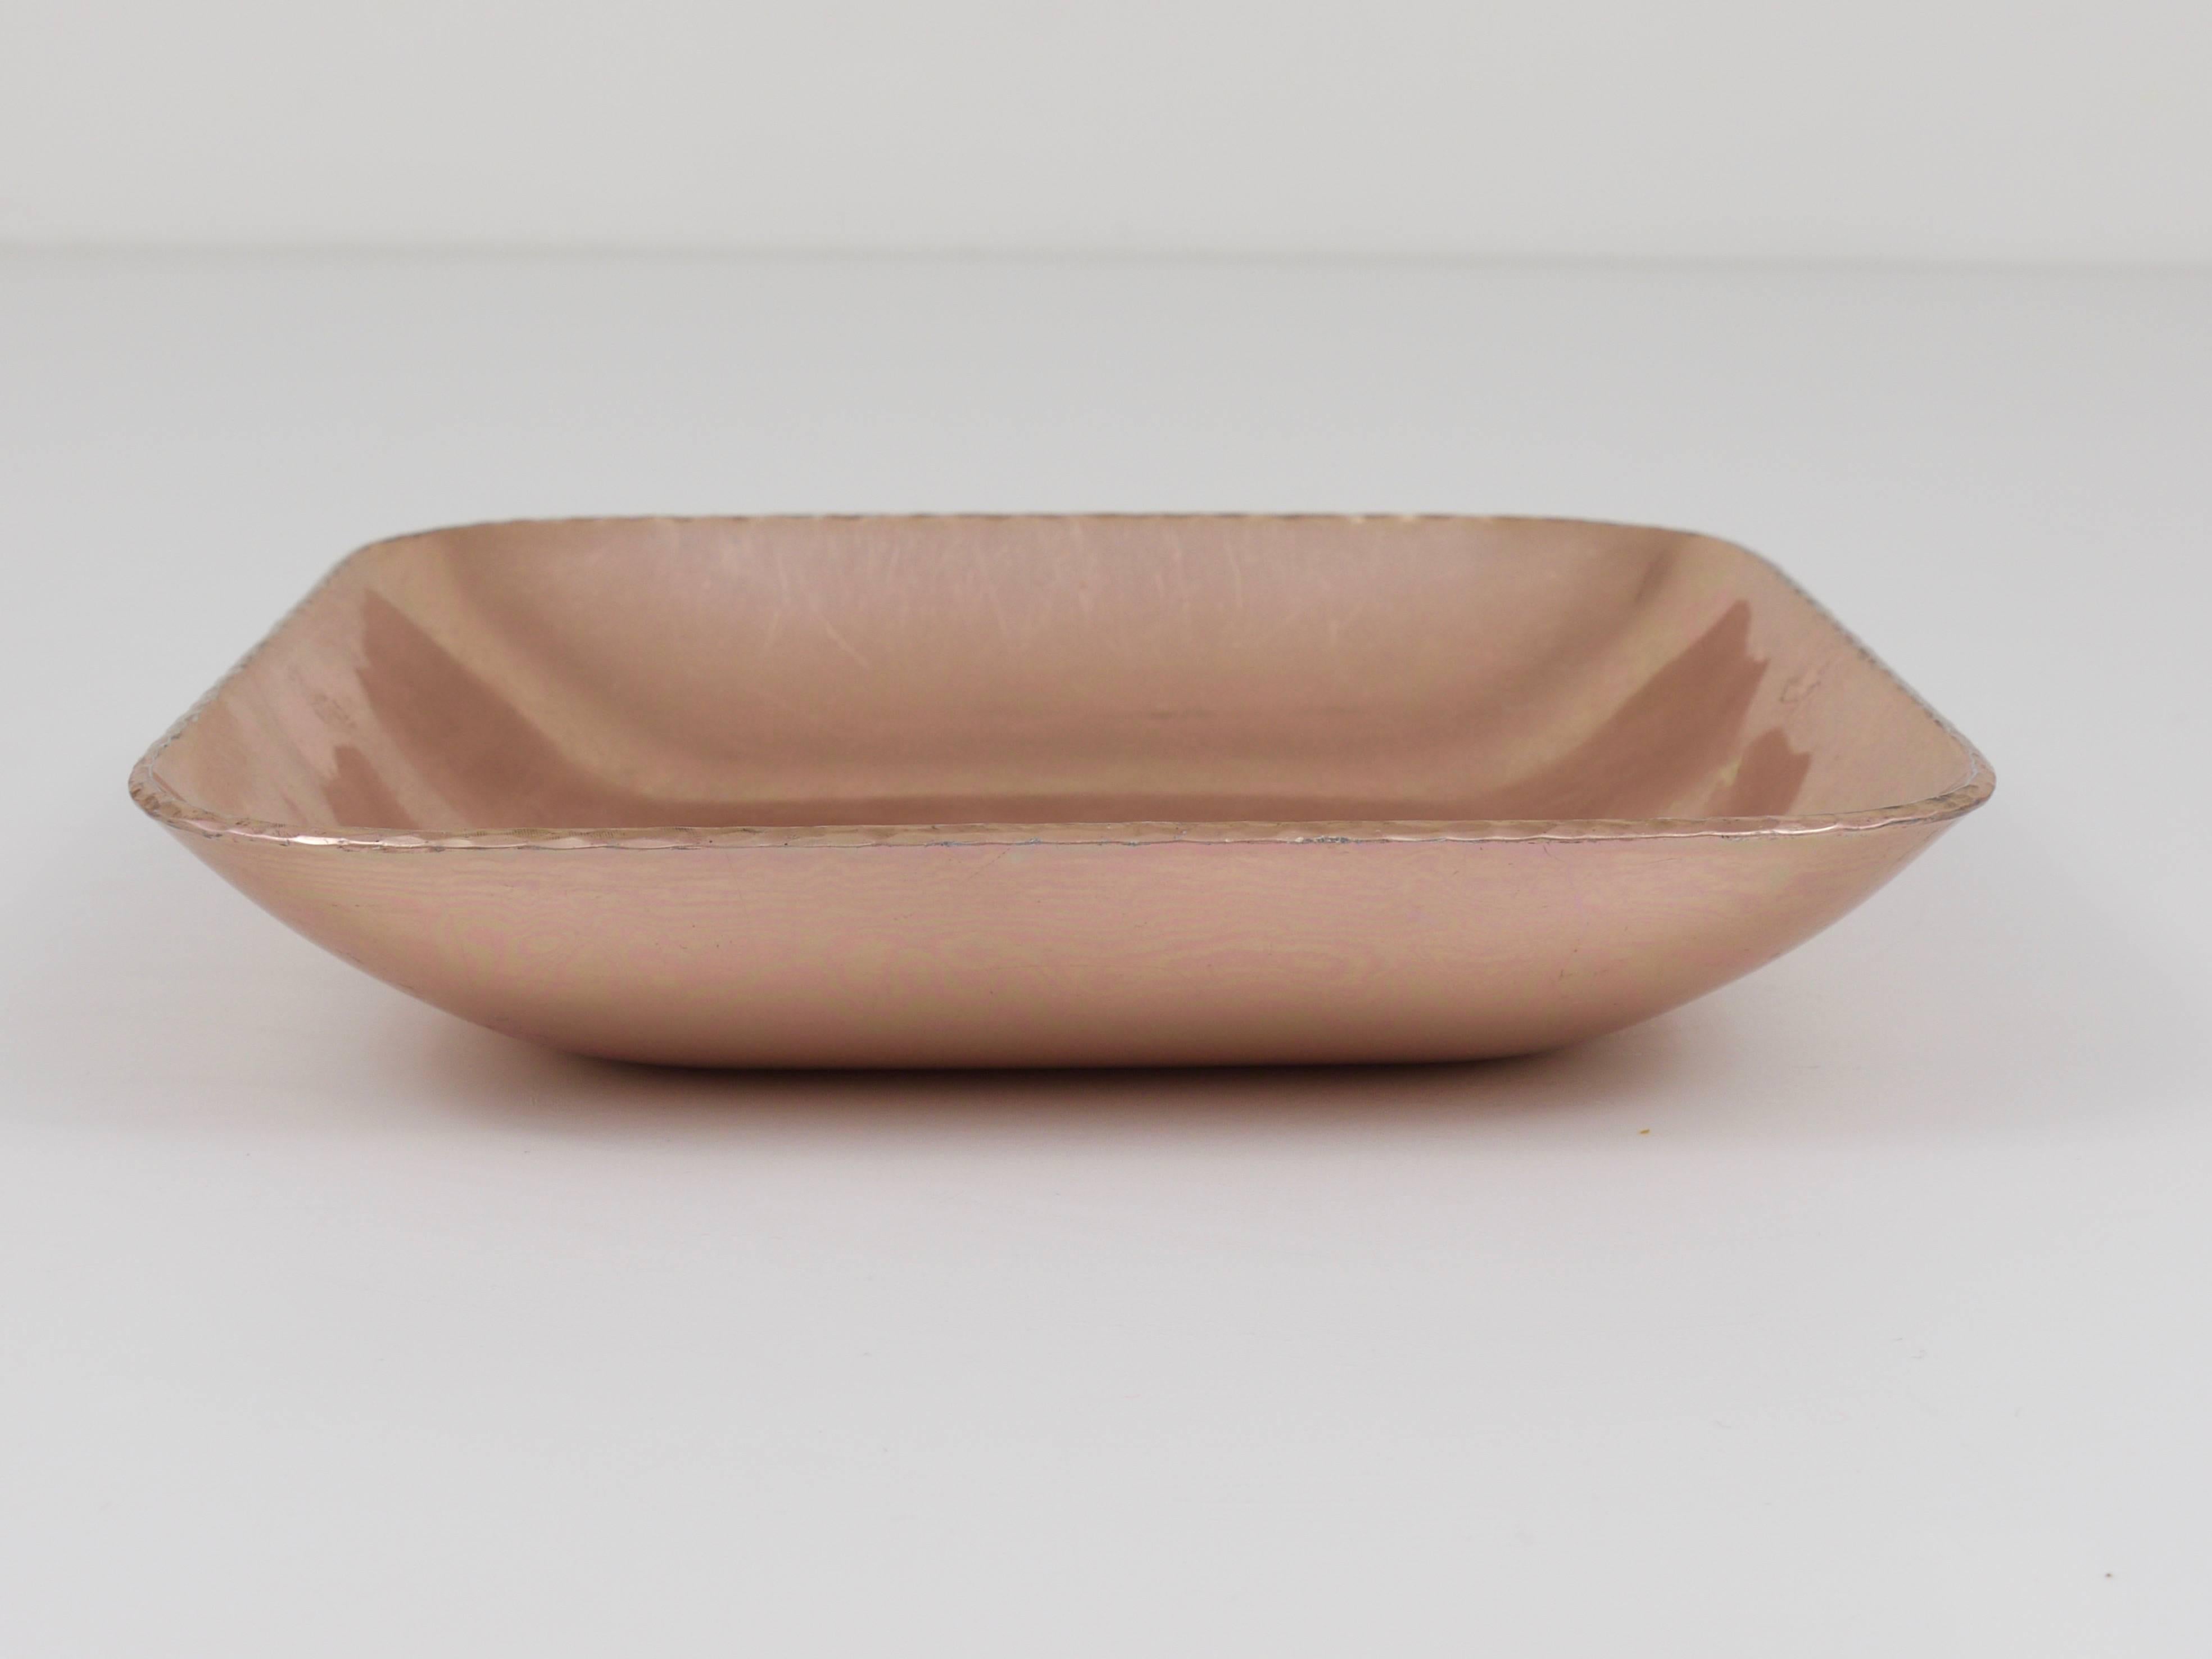 Un bol carré, anodisé rose, fait à la main en aluminium, attribué à Fritz August Breuhaus de Groot. Exécuté par Zeppelin Metallwerke au début des années 1930, il était destiné à la vaisselle des dirigeables Zeppelin, mais il peut également servir de